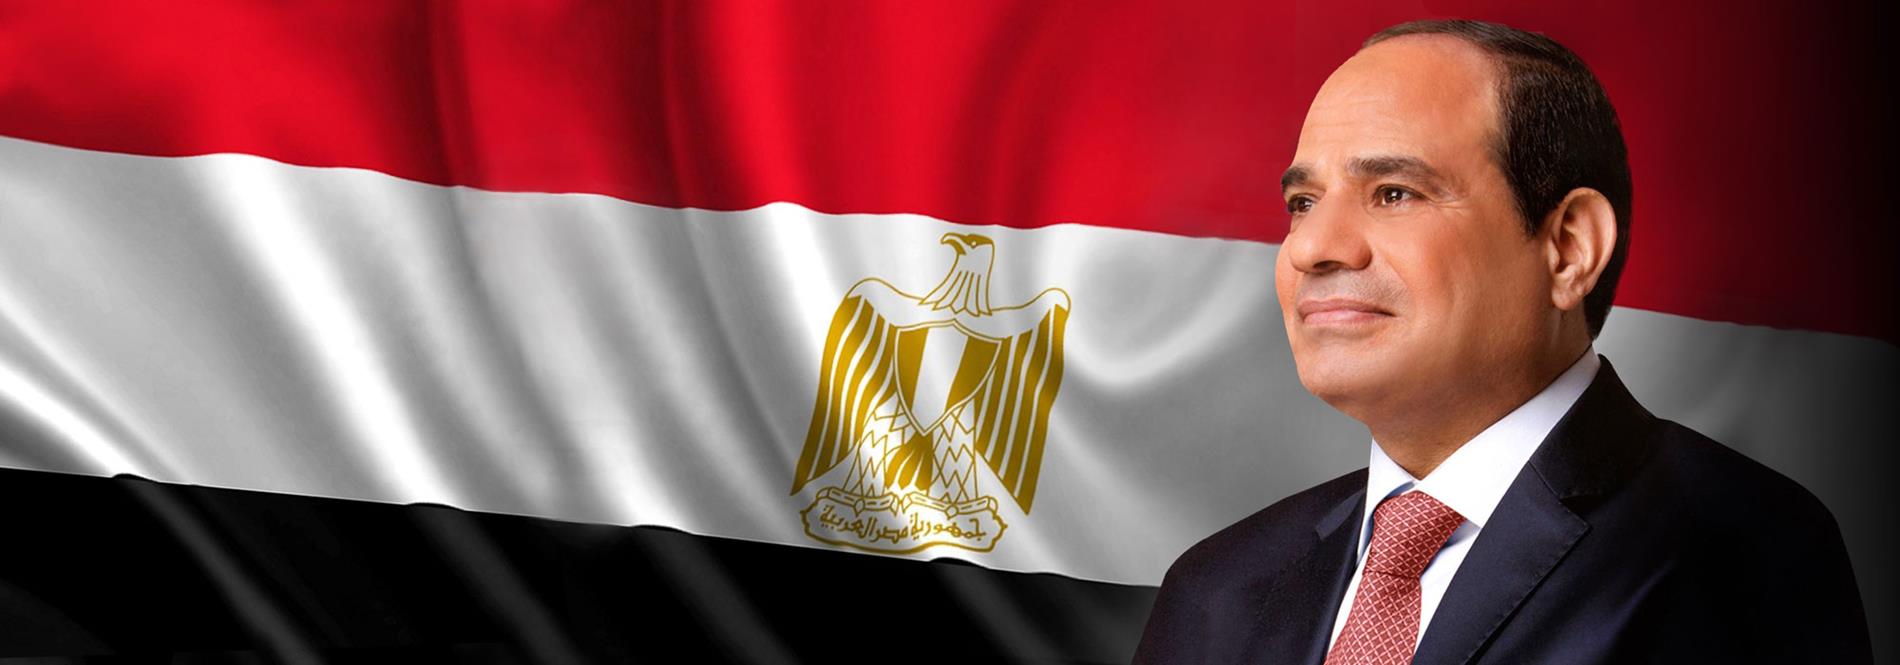 الرئيس عبد الفتاح السيسي يتابع التطورات الإيجابية للمفاوضات الحالية للتوصل إلى هدنة شاملة بقطاع غزة